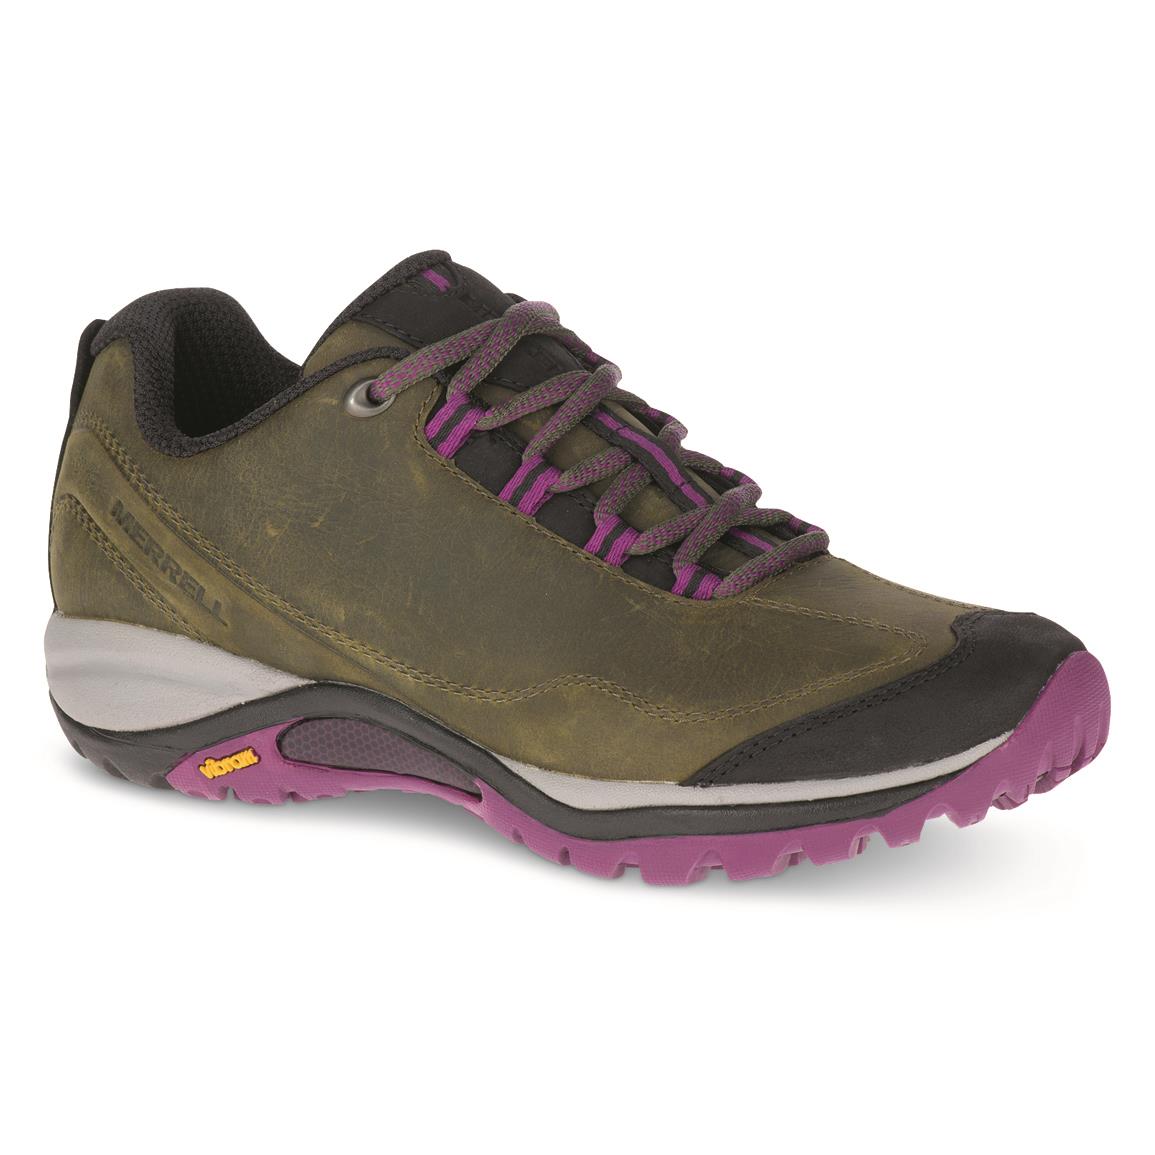 Merrell Women's Siren Traveller 3 Hiking Shoes, Olive/purple